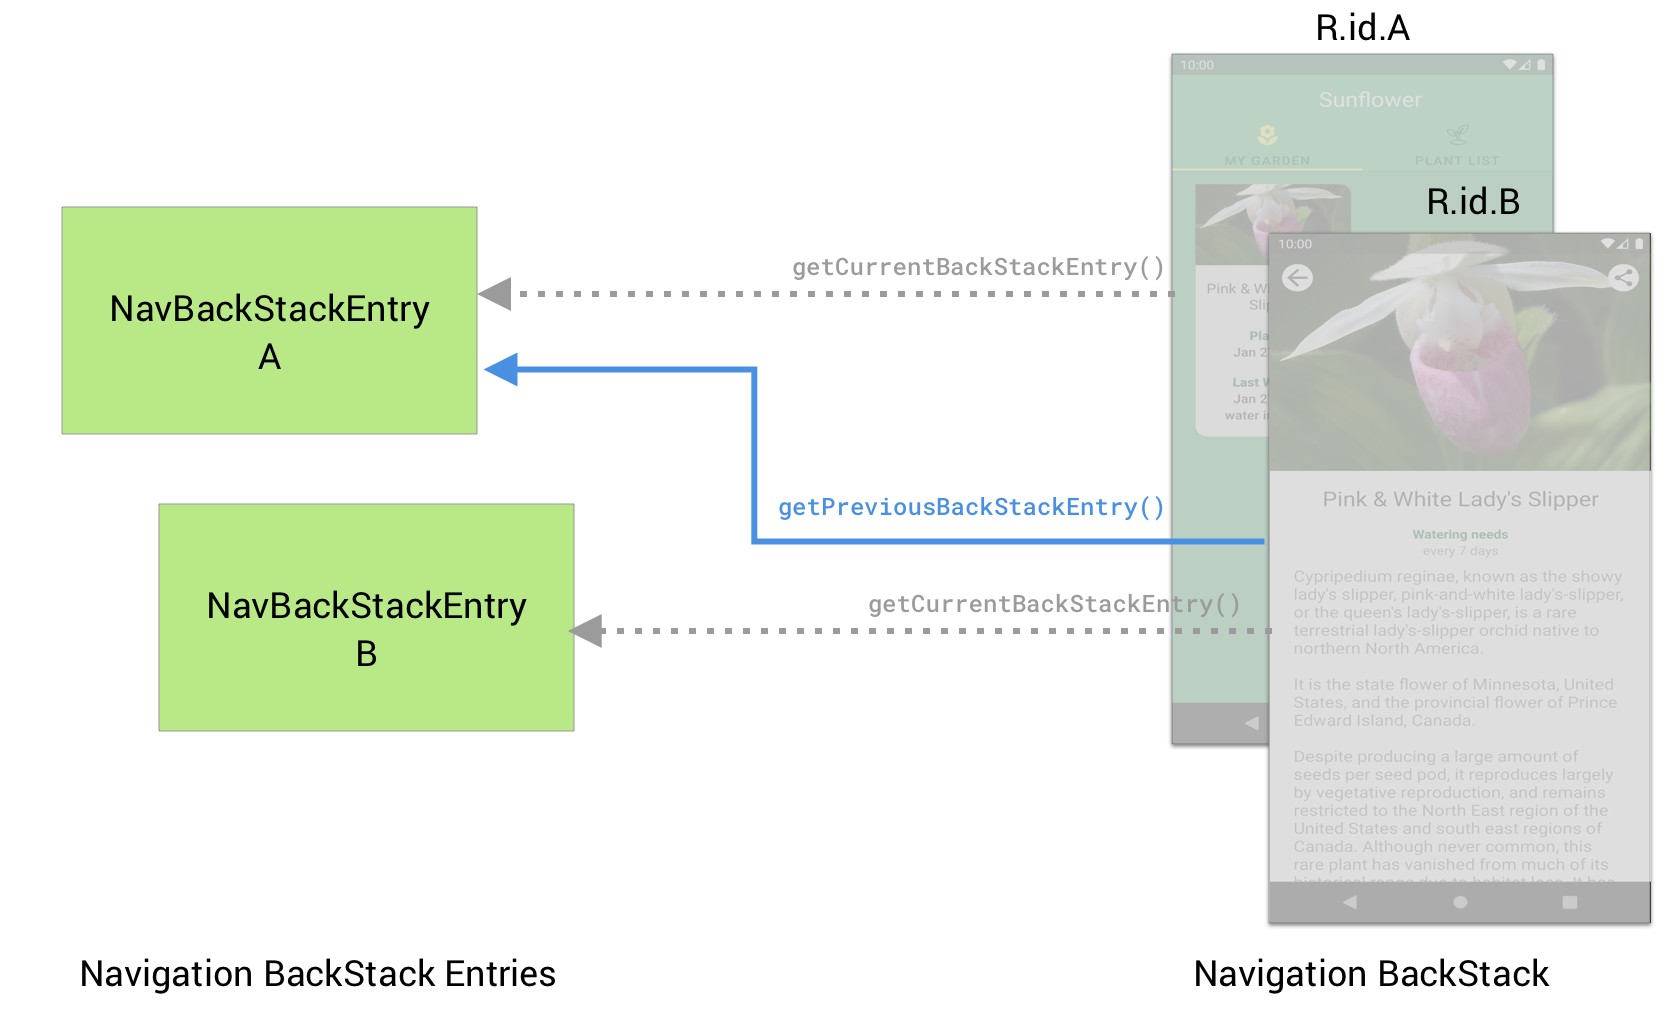 目的地 B 可以使用 getPreviousBackStackEntry() 检索上一个目的地 A 的 NavBackStackEntry